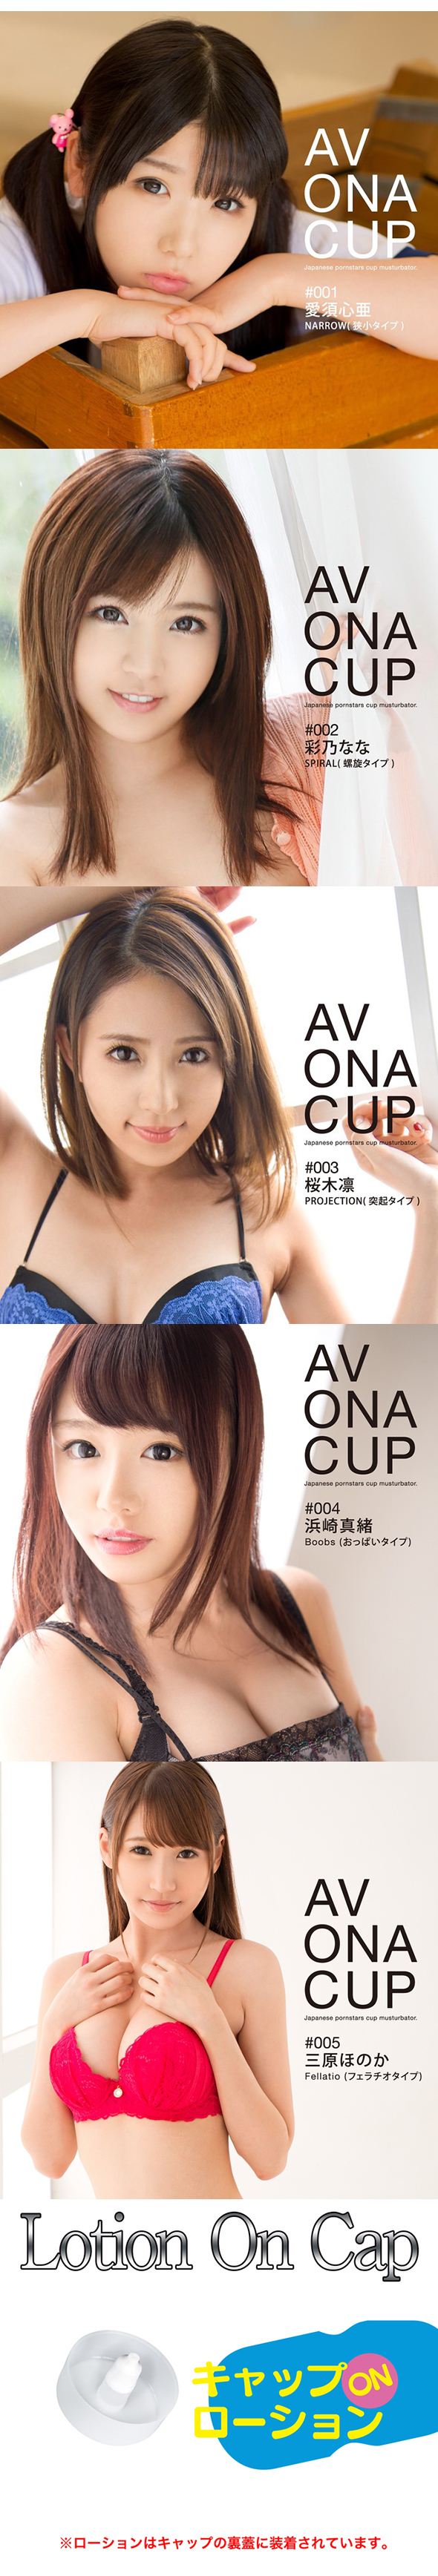 AV ONA CUP@#1`#5